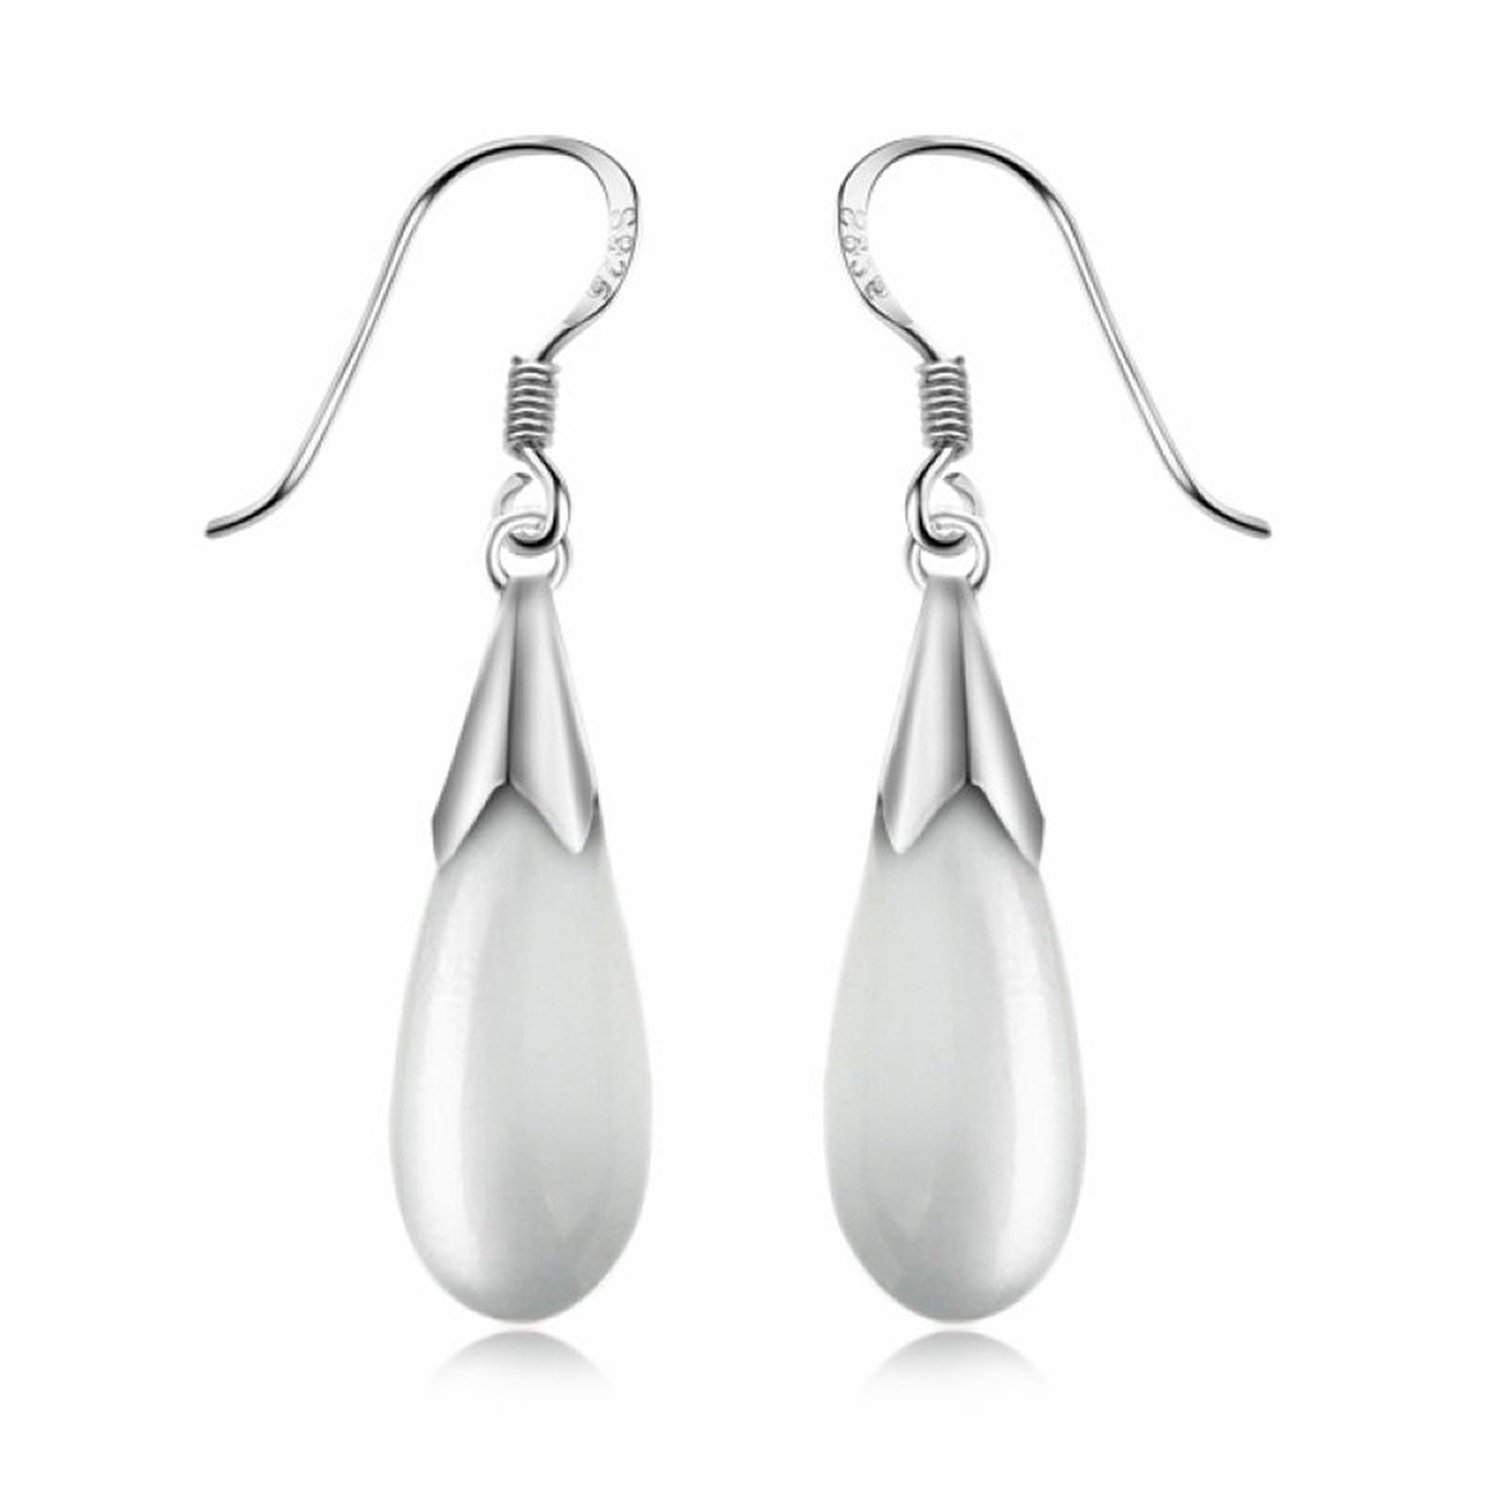 Ashiana 925 Sterling-Silver Water-drop Cats Eye Earrings for Women White